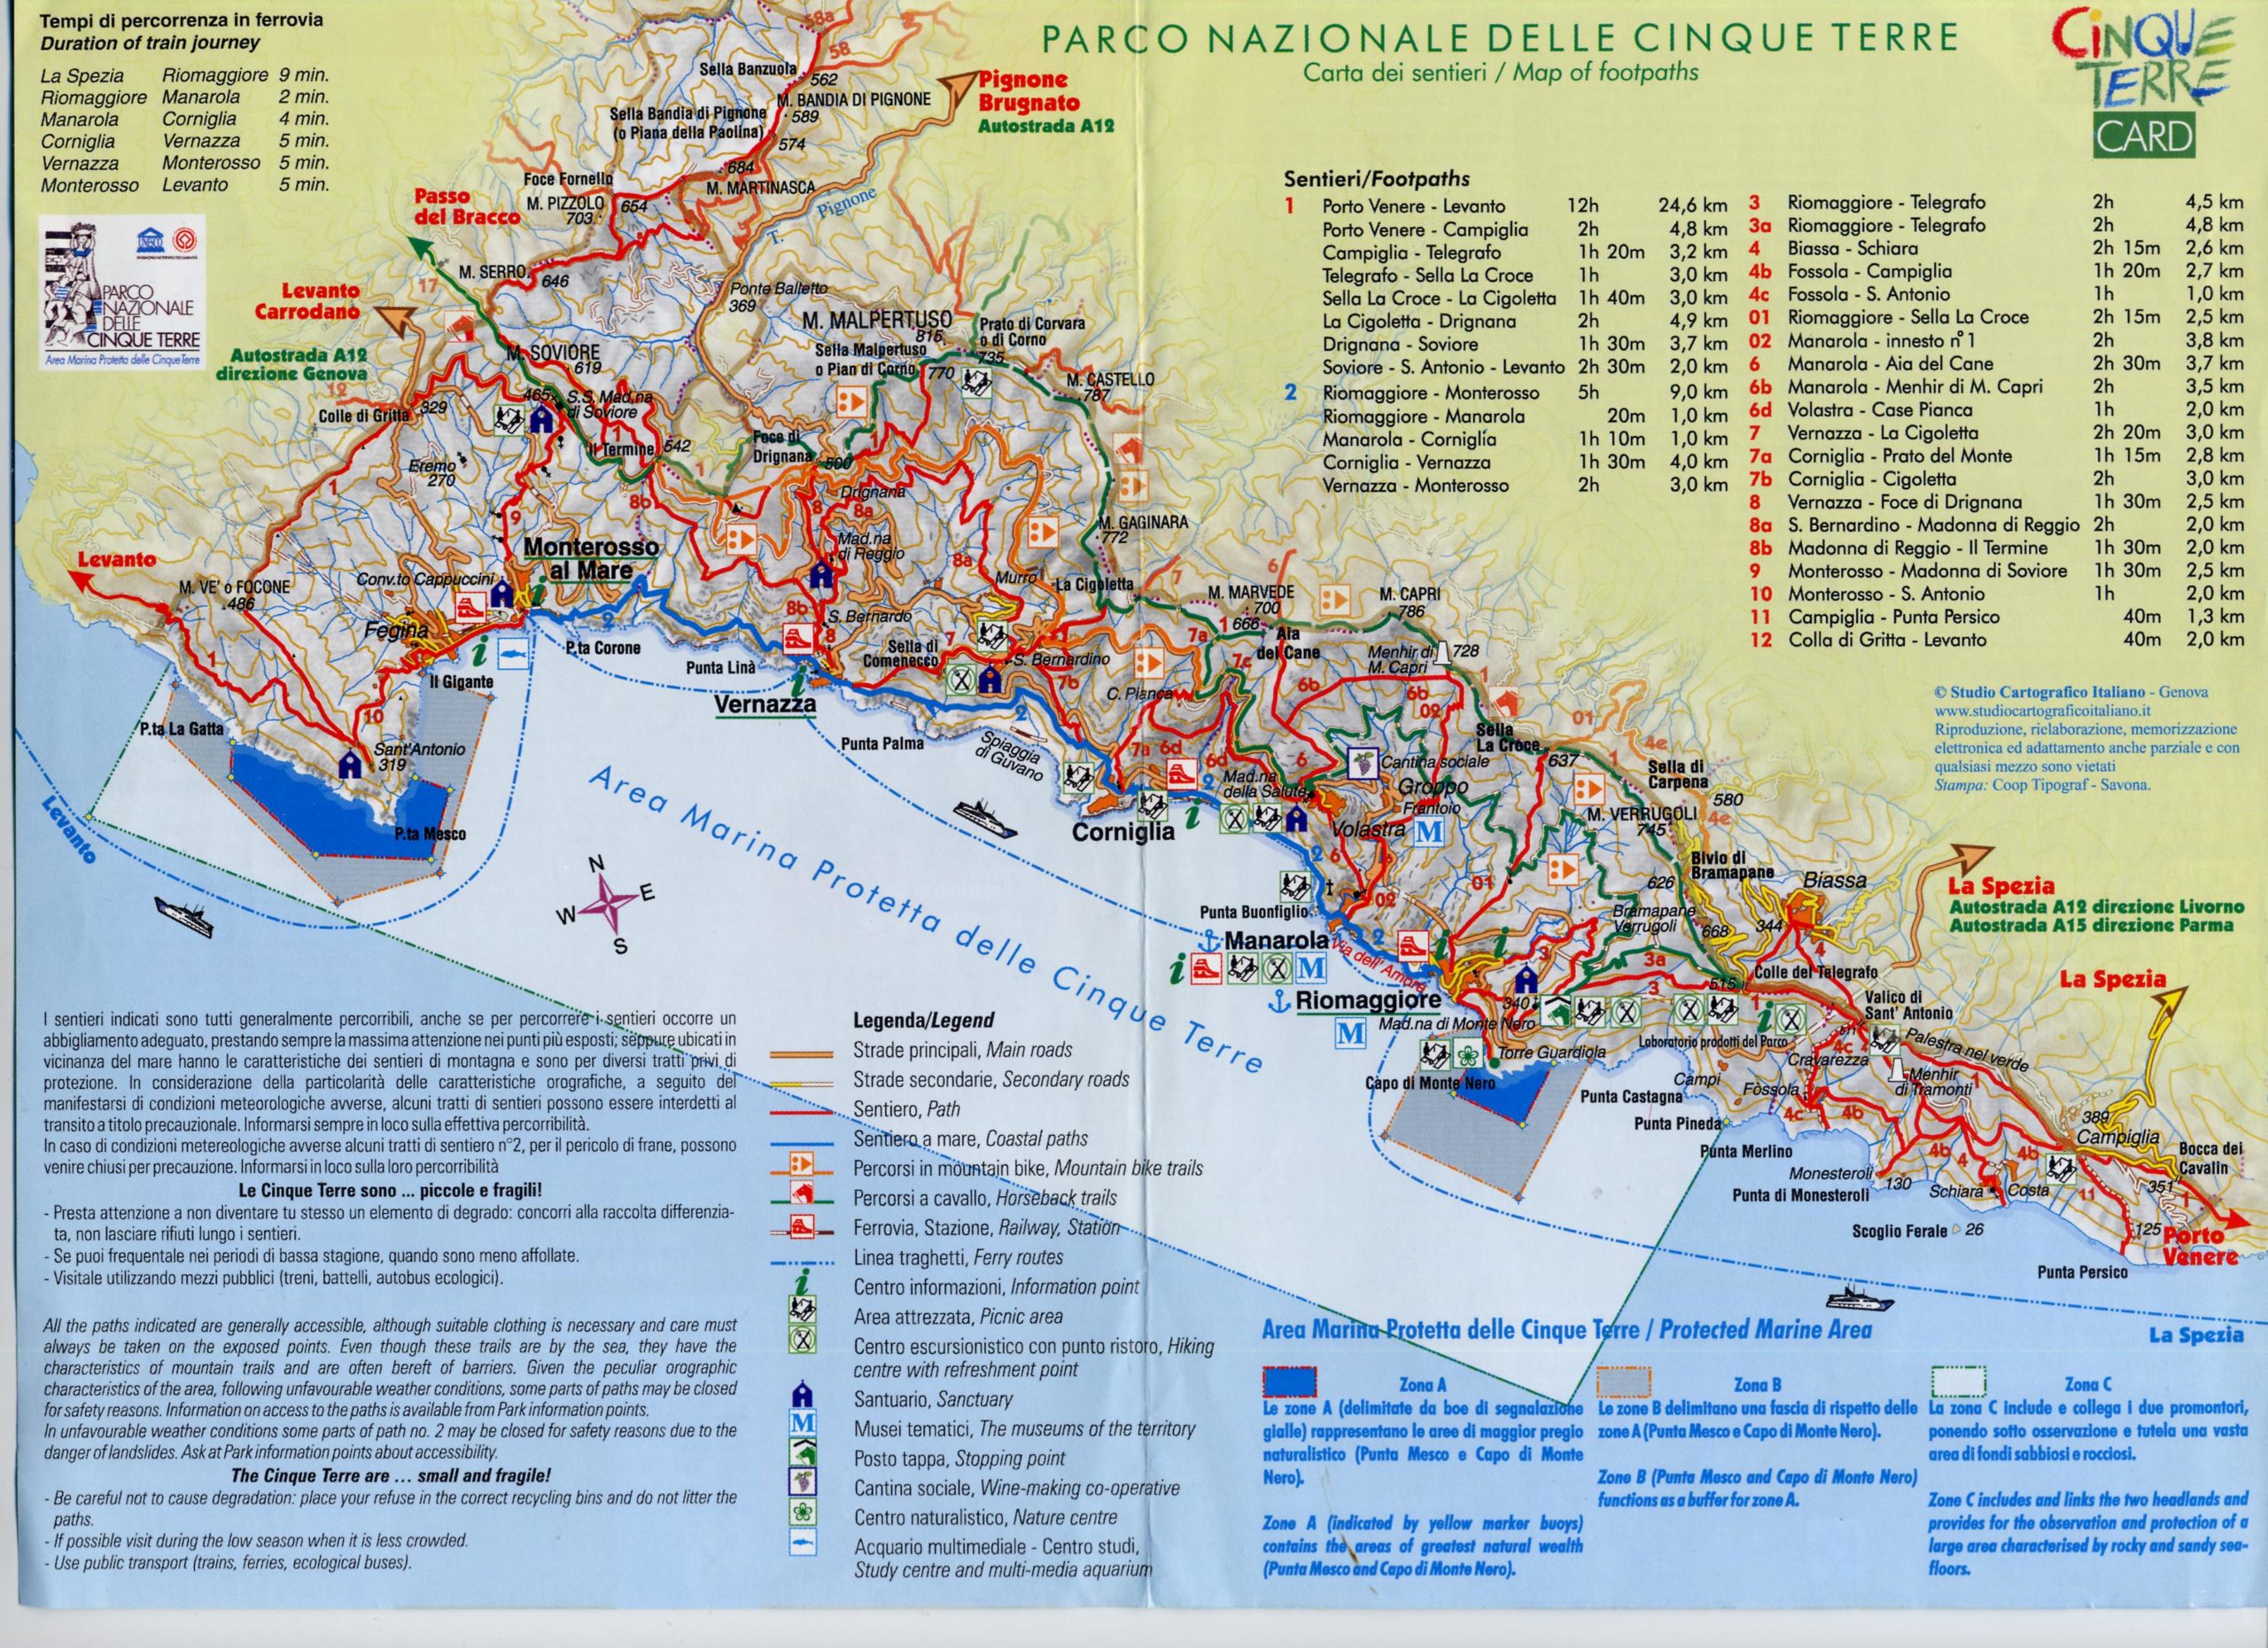 mapa_cinque_terre_card - Guide de voyages en Toscane